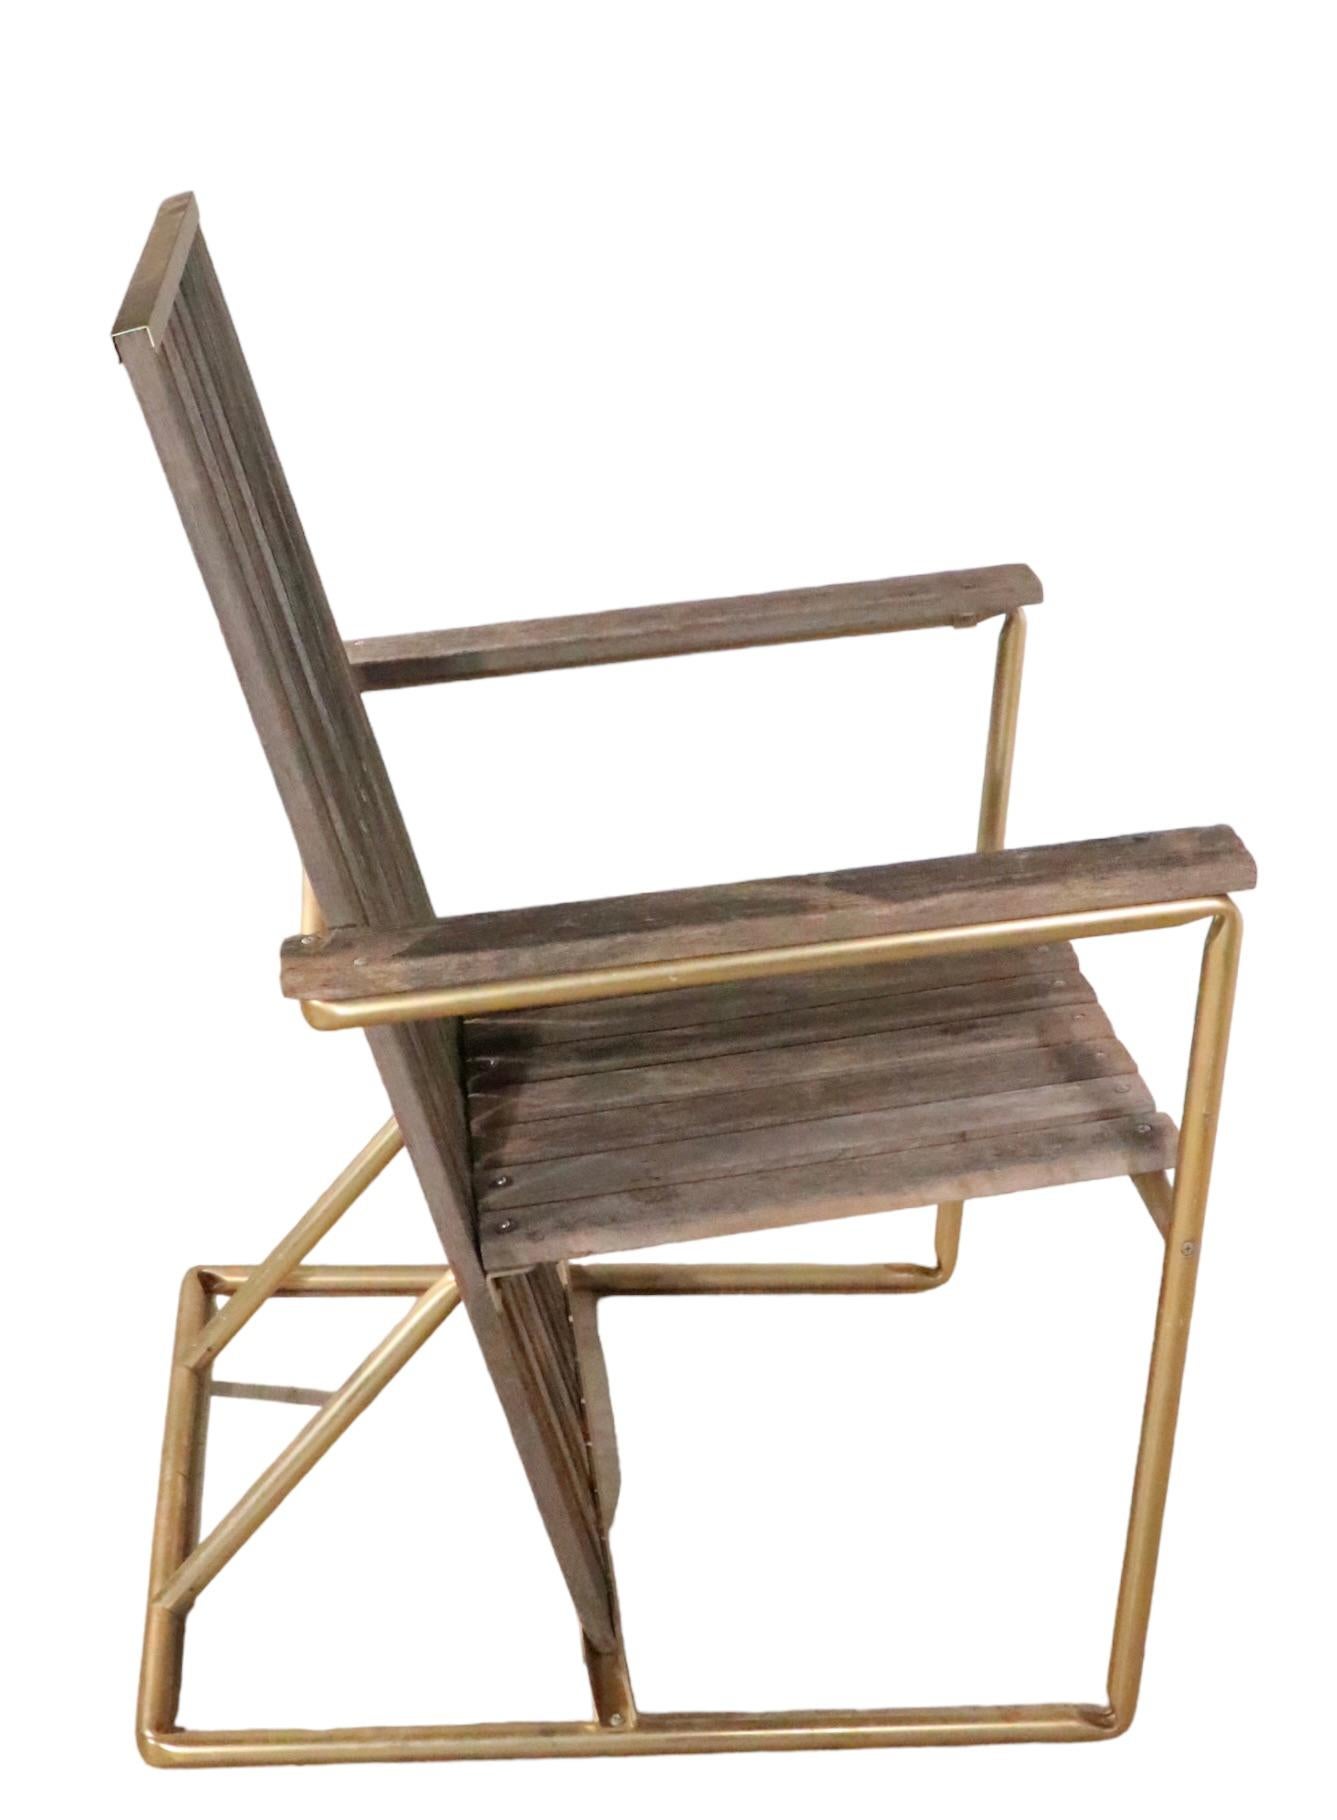 Schicker architektonischer Vintage-Sessel aus den 1970er Jahren mit sich wiederholenden Holzplanken und einem goldfarbenen eloxierten Aluminiumrahmen. Ein Design, das an die klassische De Stijl-Schule von Gerrit Rievtveld erinnert, in einem